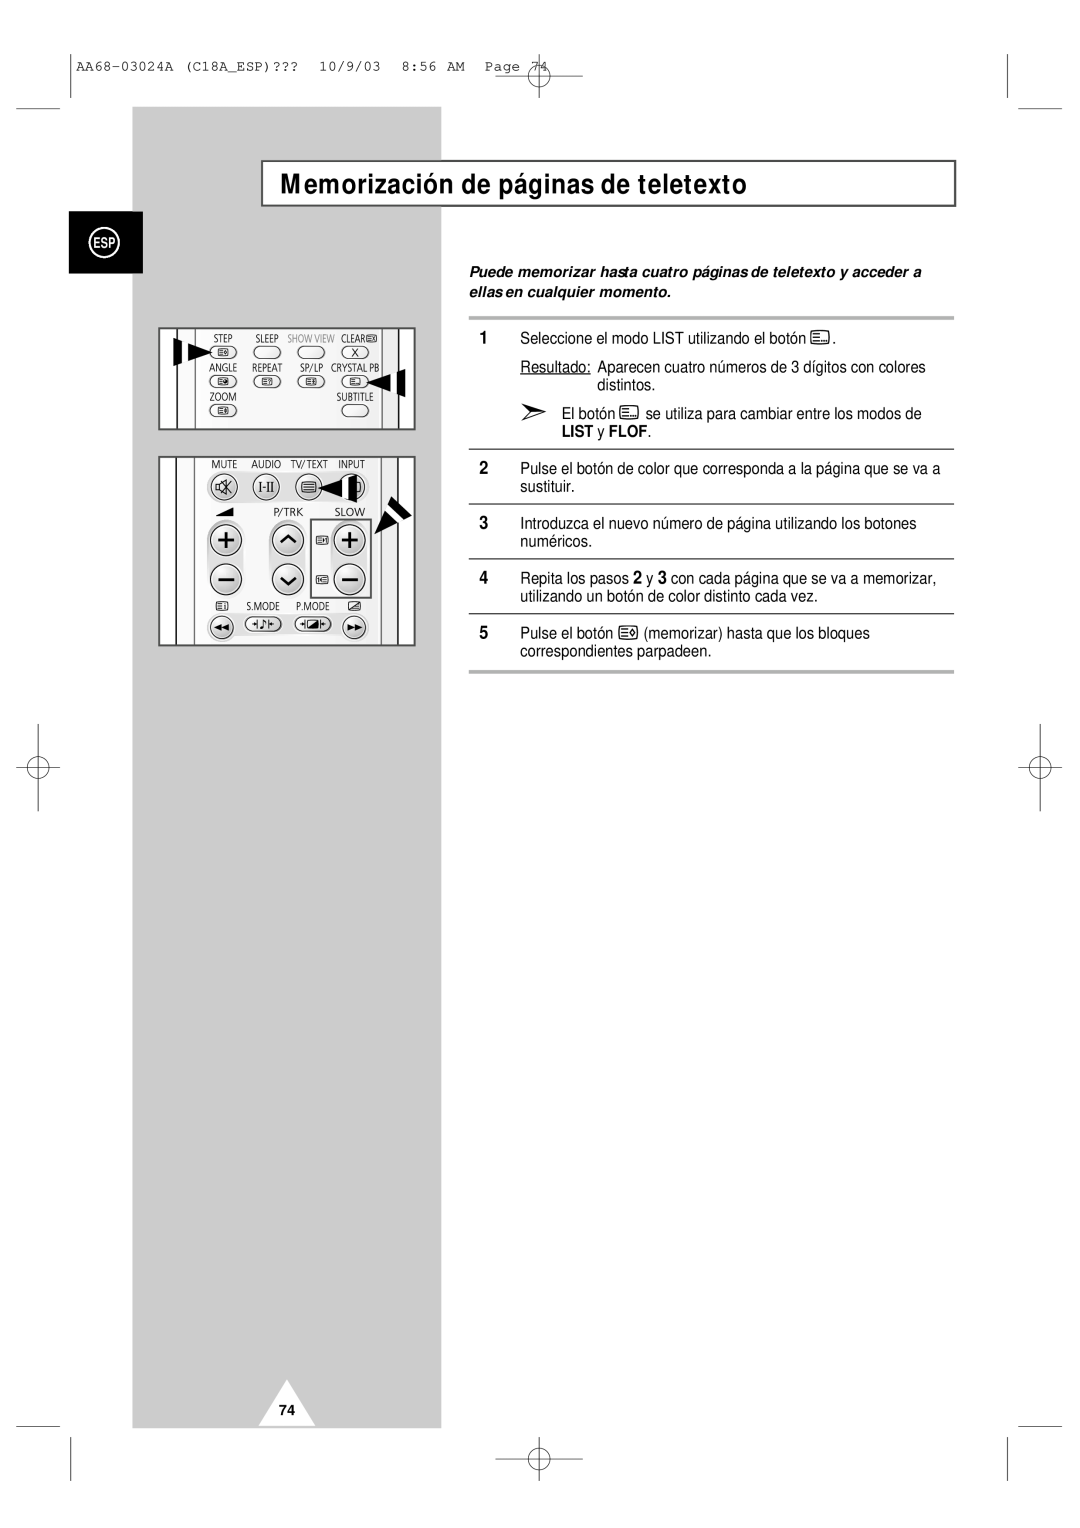 Samsung UW17J11VD5XXEC, UW17J11VD5XXEF manual Memorización de páginas de teletexto, LIST y FLOF 